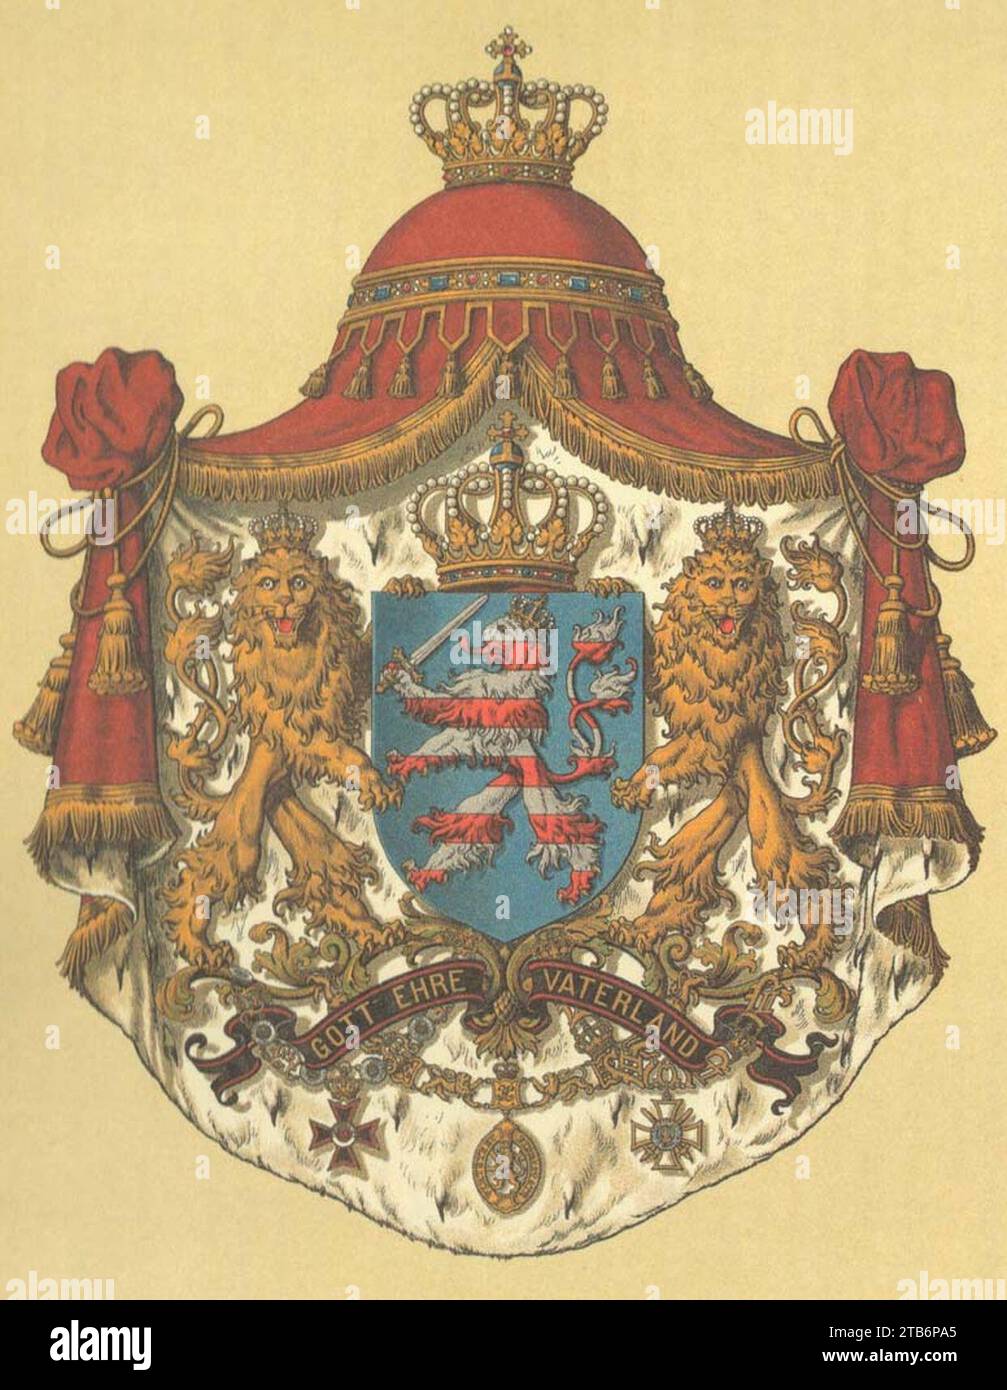 Wappen Deutsches Reich - Grossherzogtum Hessen. Stock Photo